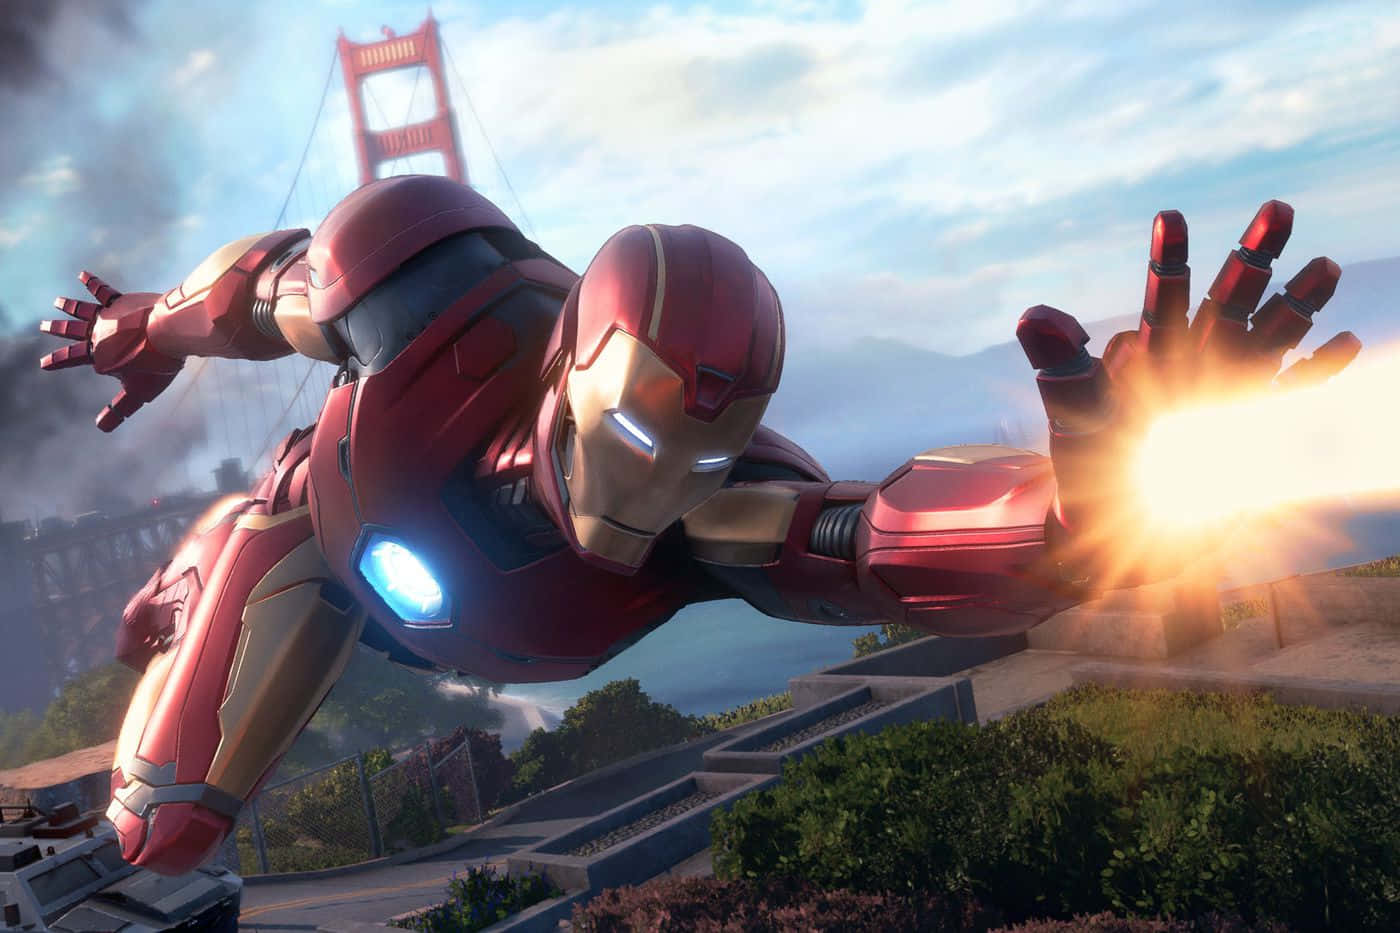 Bildvon Iron Man, Der In Der Nähe Der Golden Gate Bridge Fliegt.